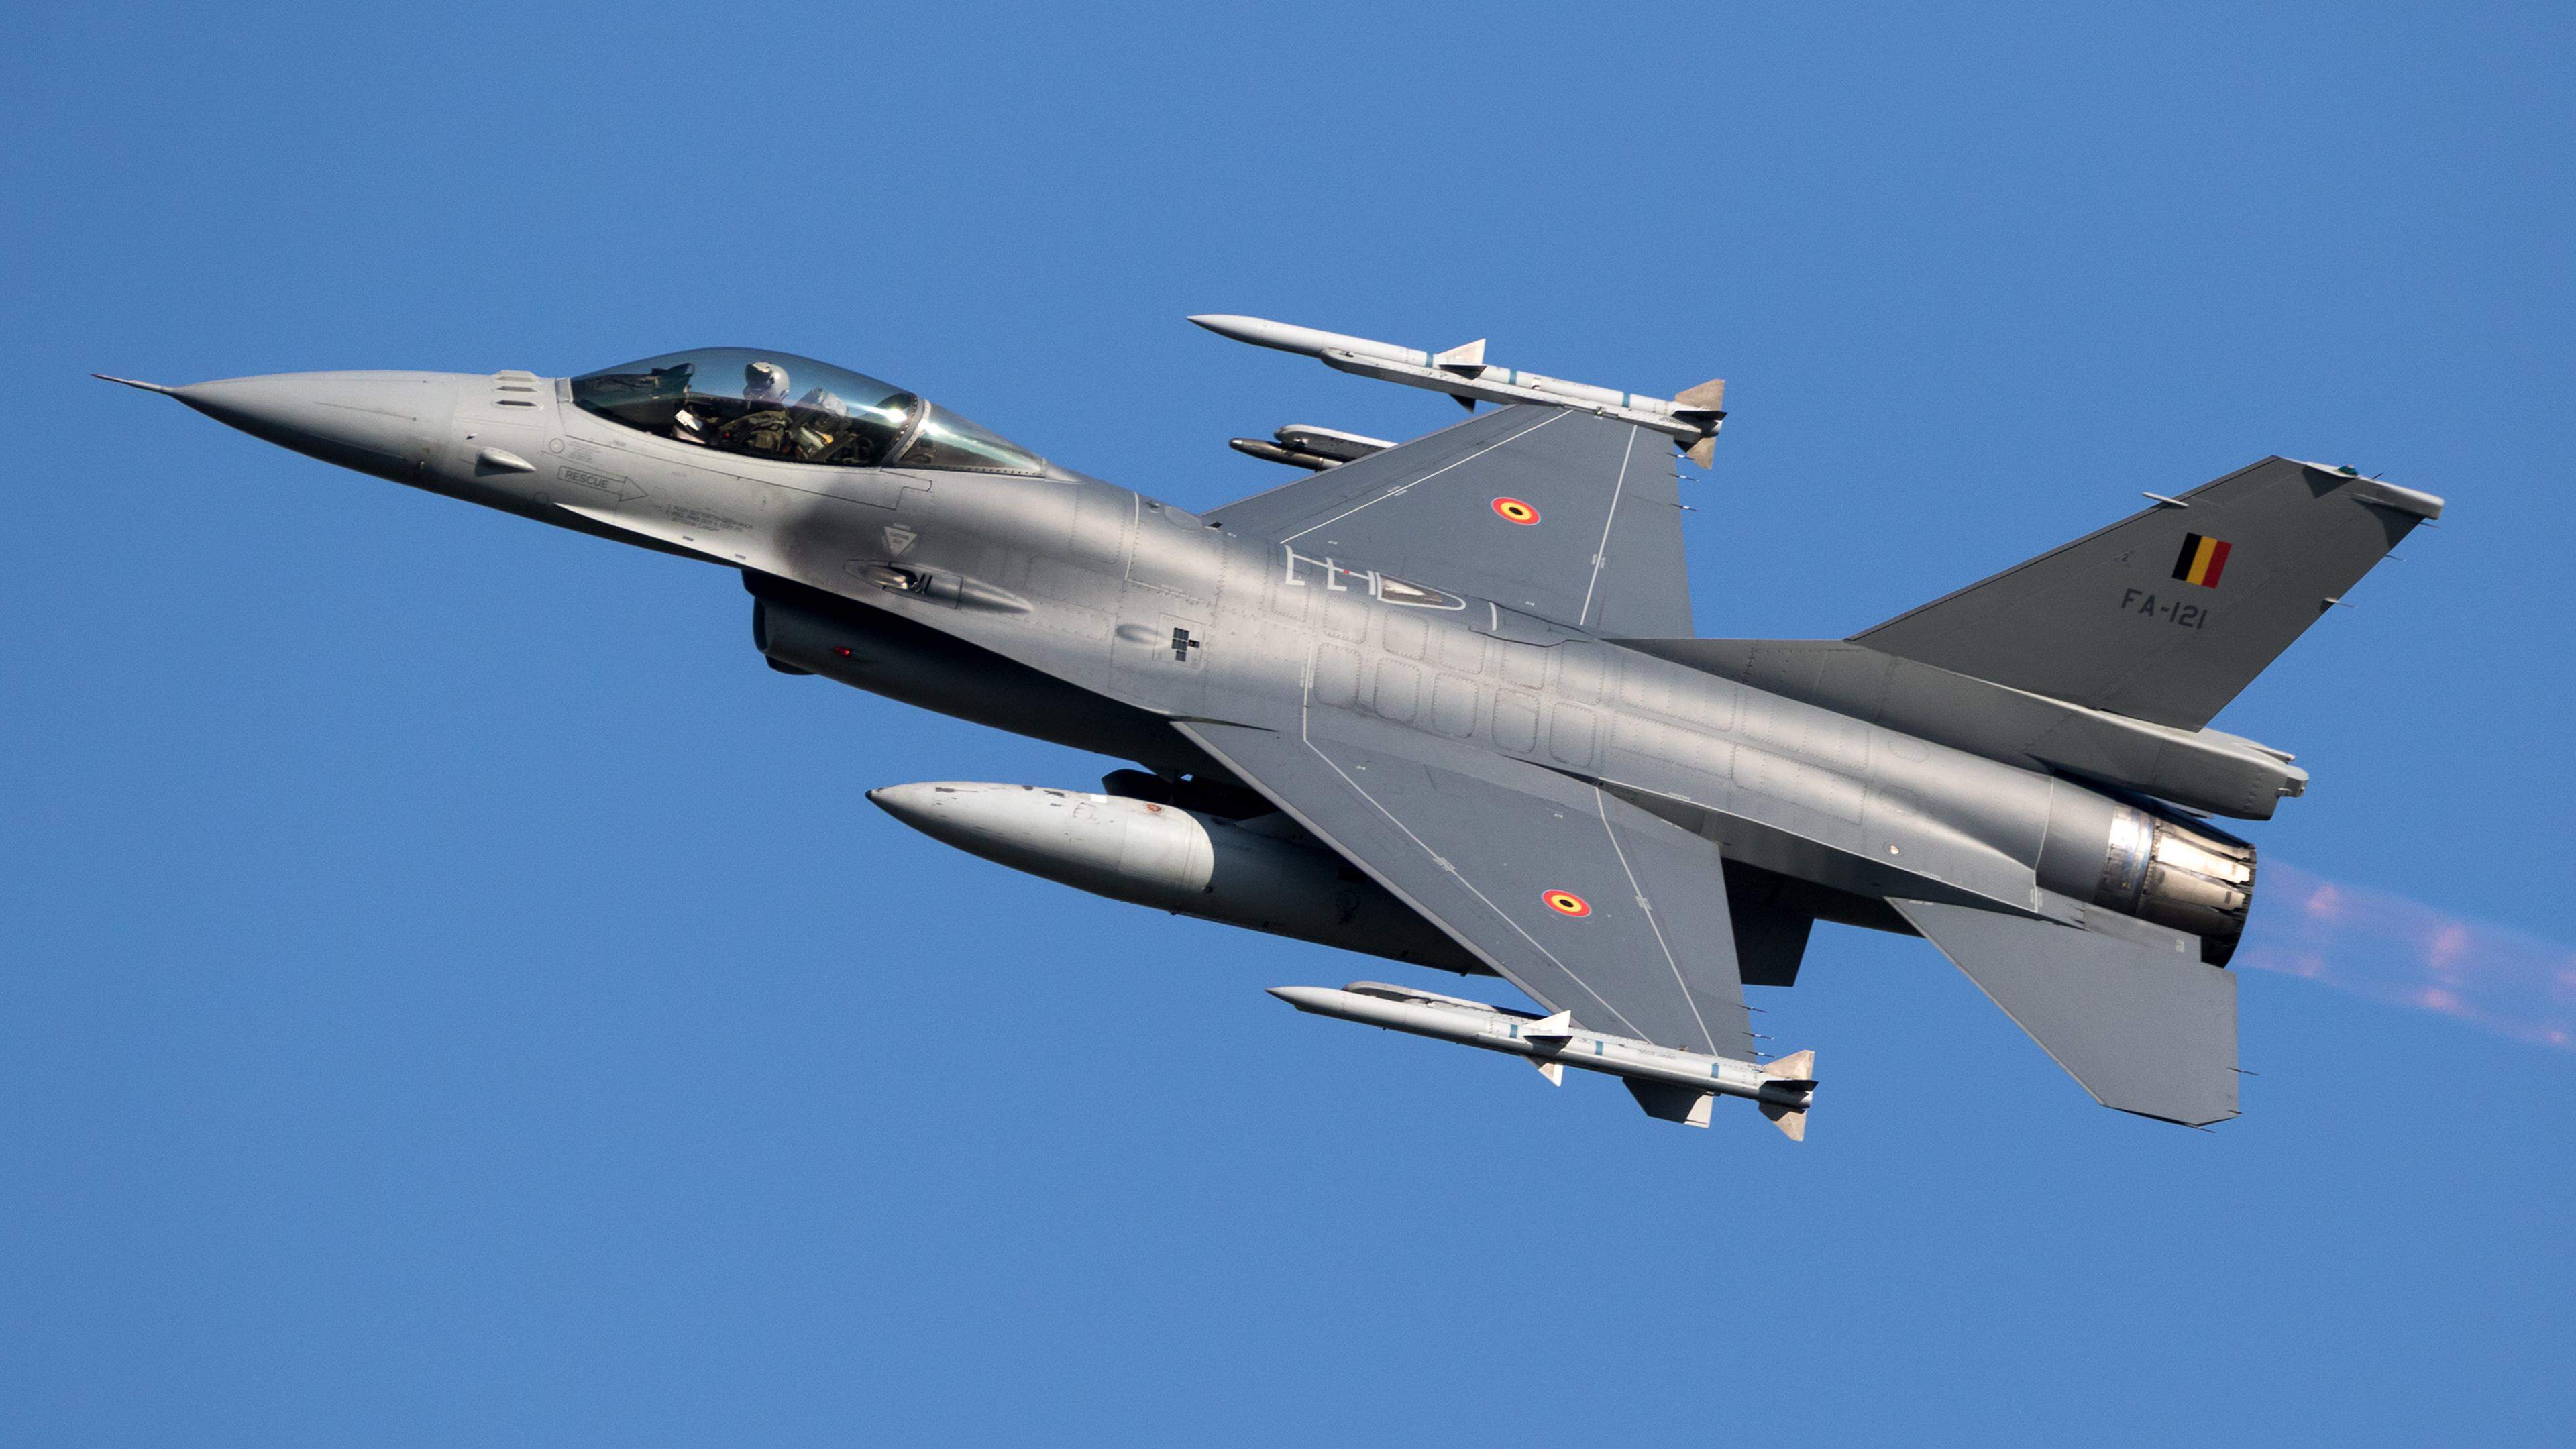 Les F-16 répondent aux demandes pressantes de l’Ukraine d’obtenir davantage d’armes pour se protéger.